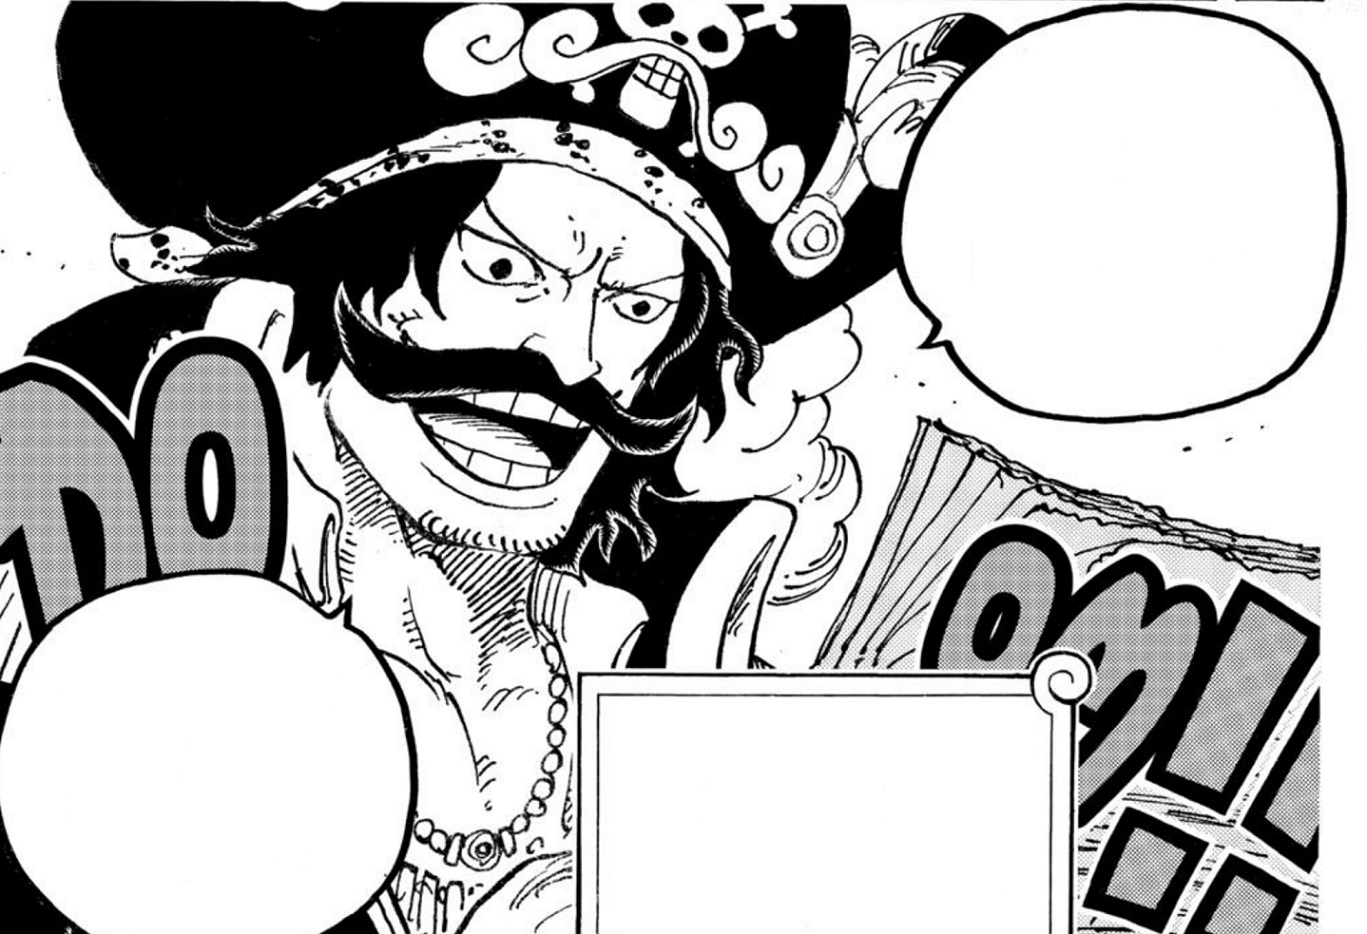 Anime de One Piece fez uma pequena mudança no visual de Roger